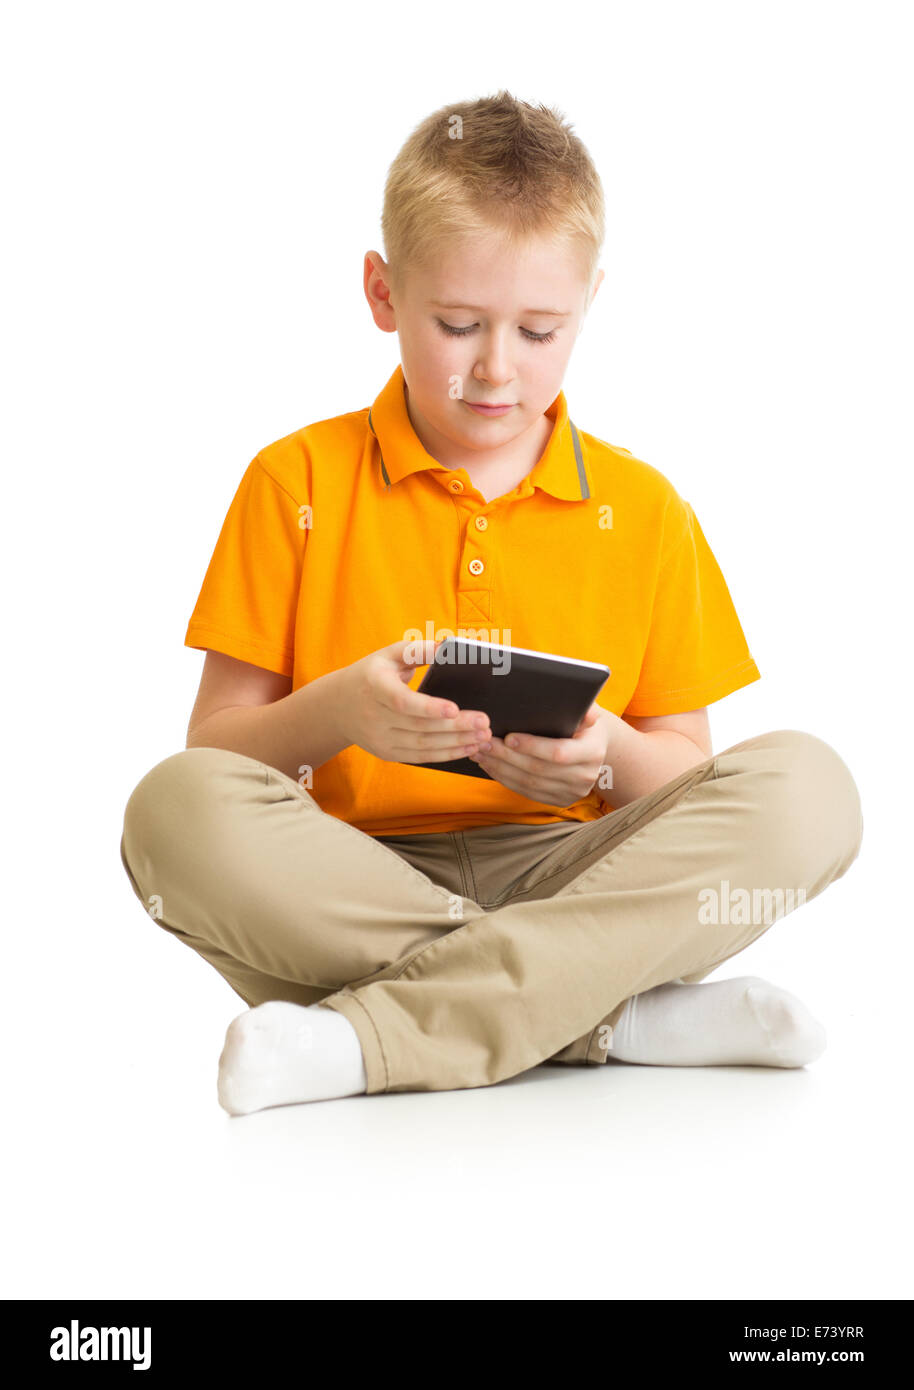 Nachdenklich Kind Junge sitzt mit Tablet-pc oder Phablet isoliert Stockfoto